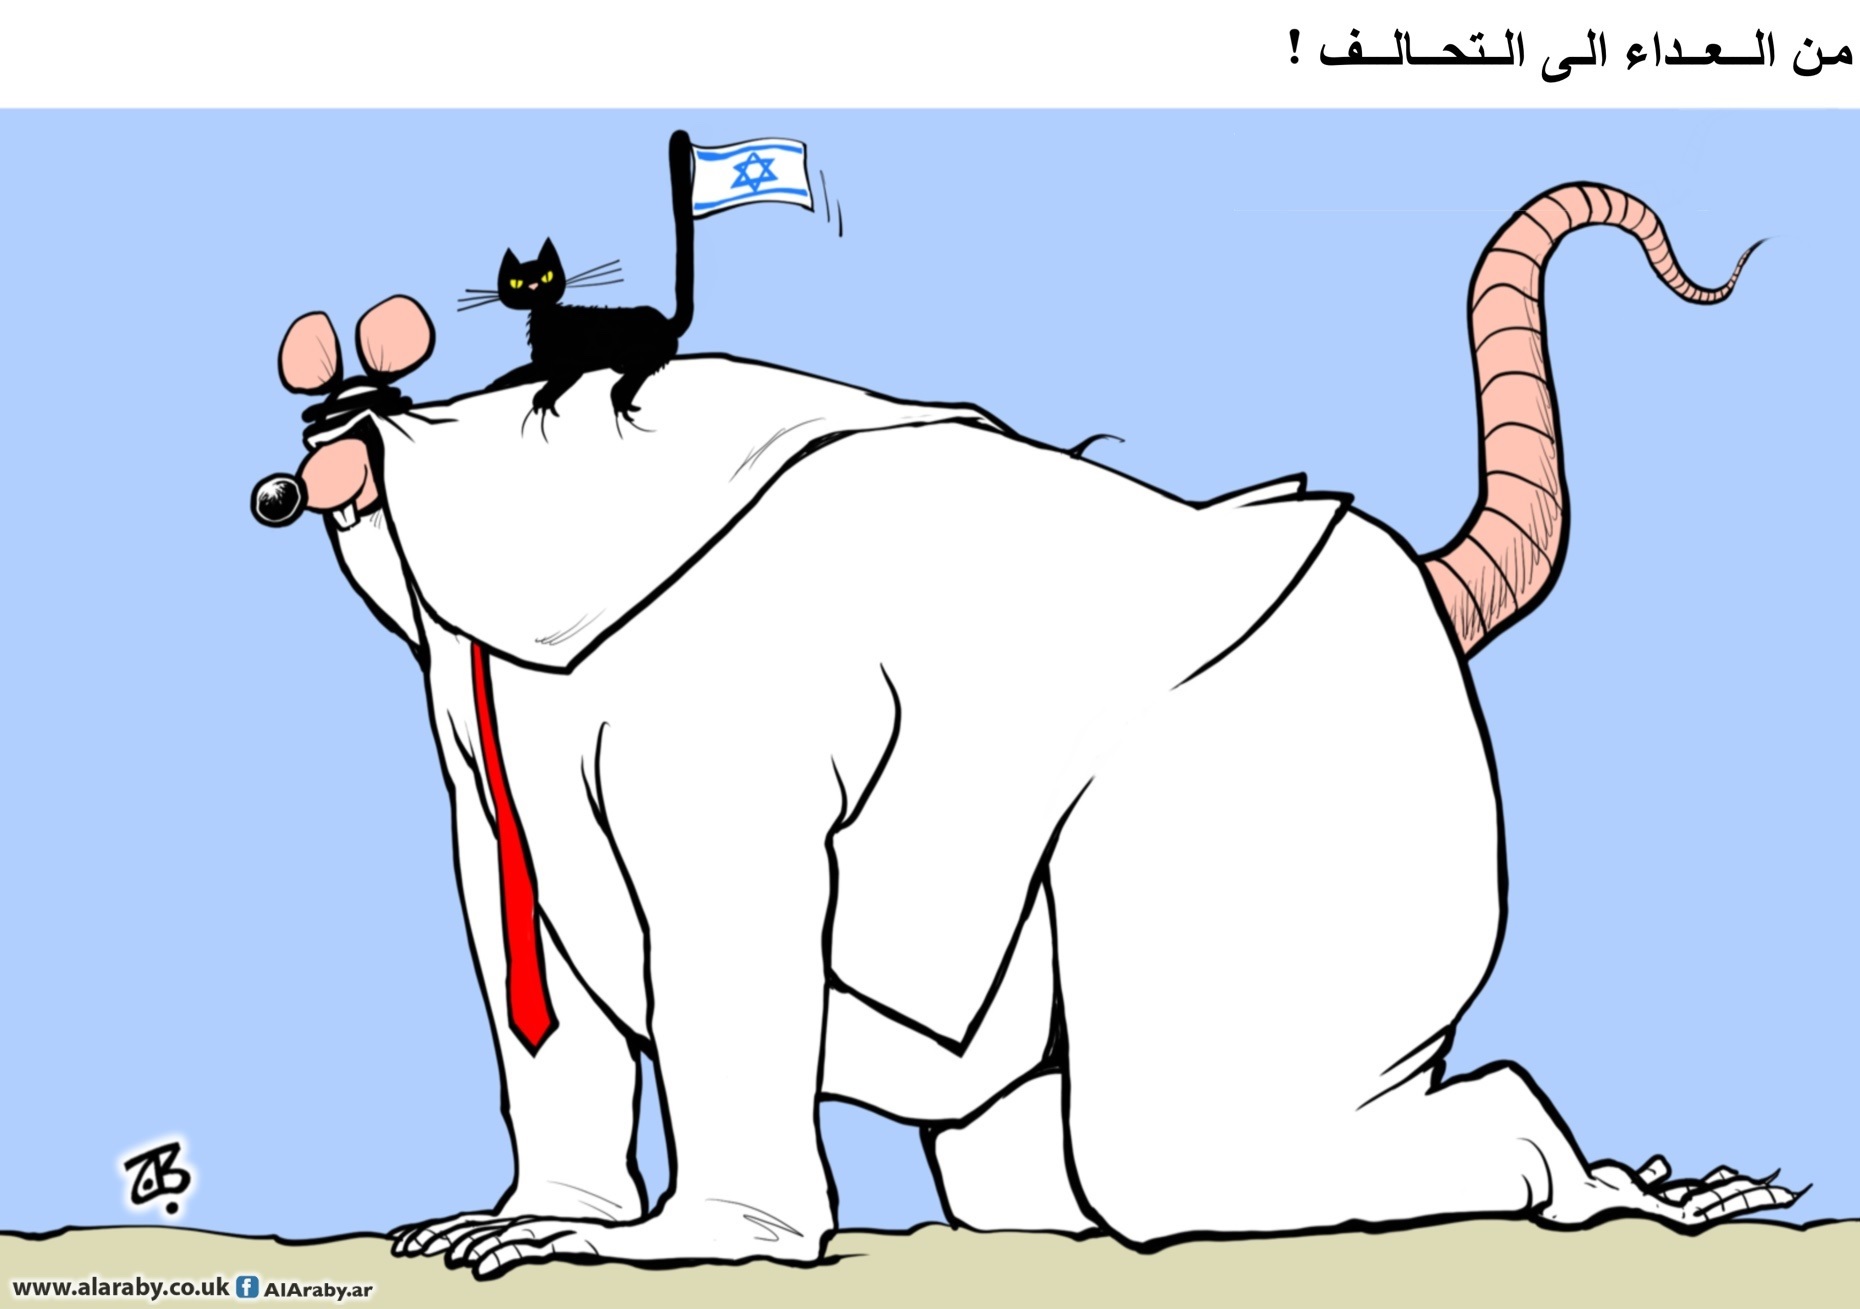 (من رسومات حجاج في "العربي الجديد")